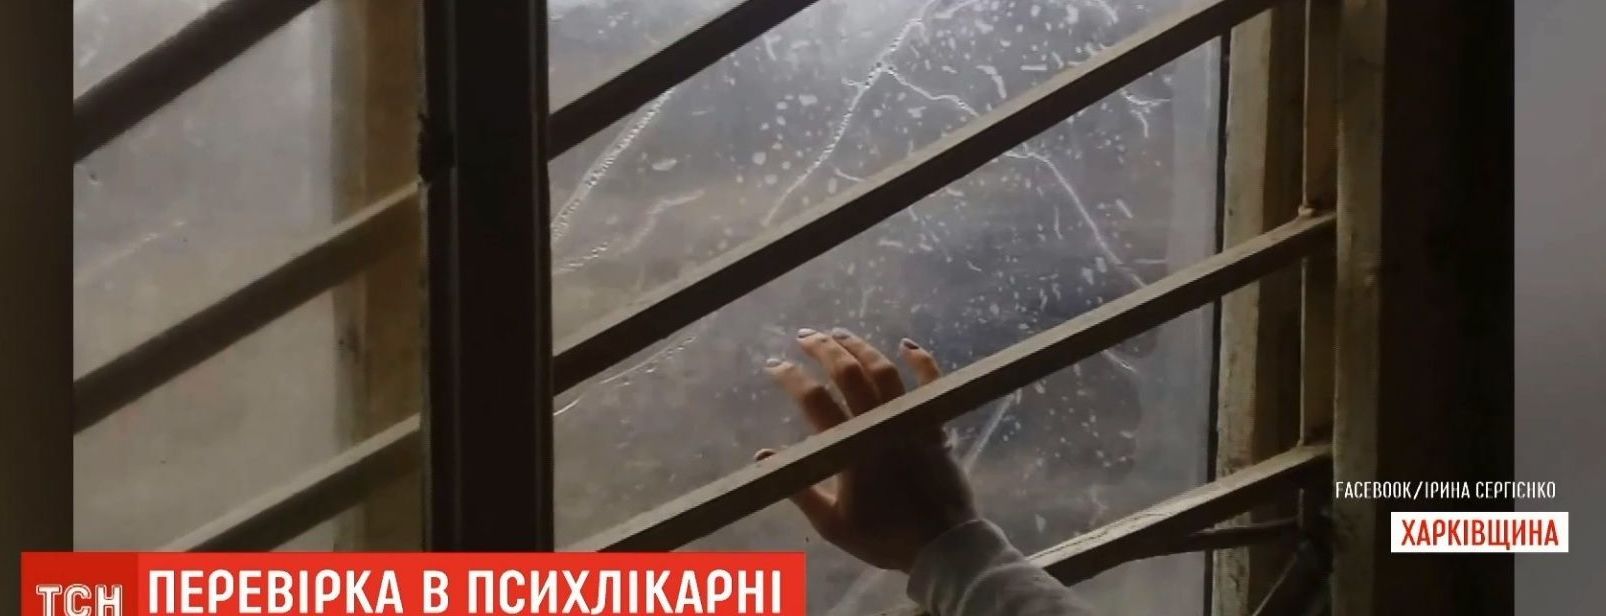 Керівника скандальної психлікарні на Харківщині відсторонили від роботи